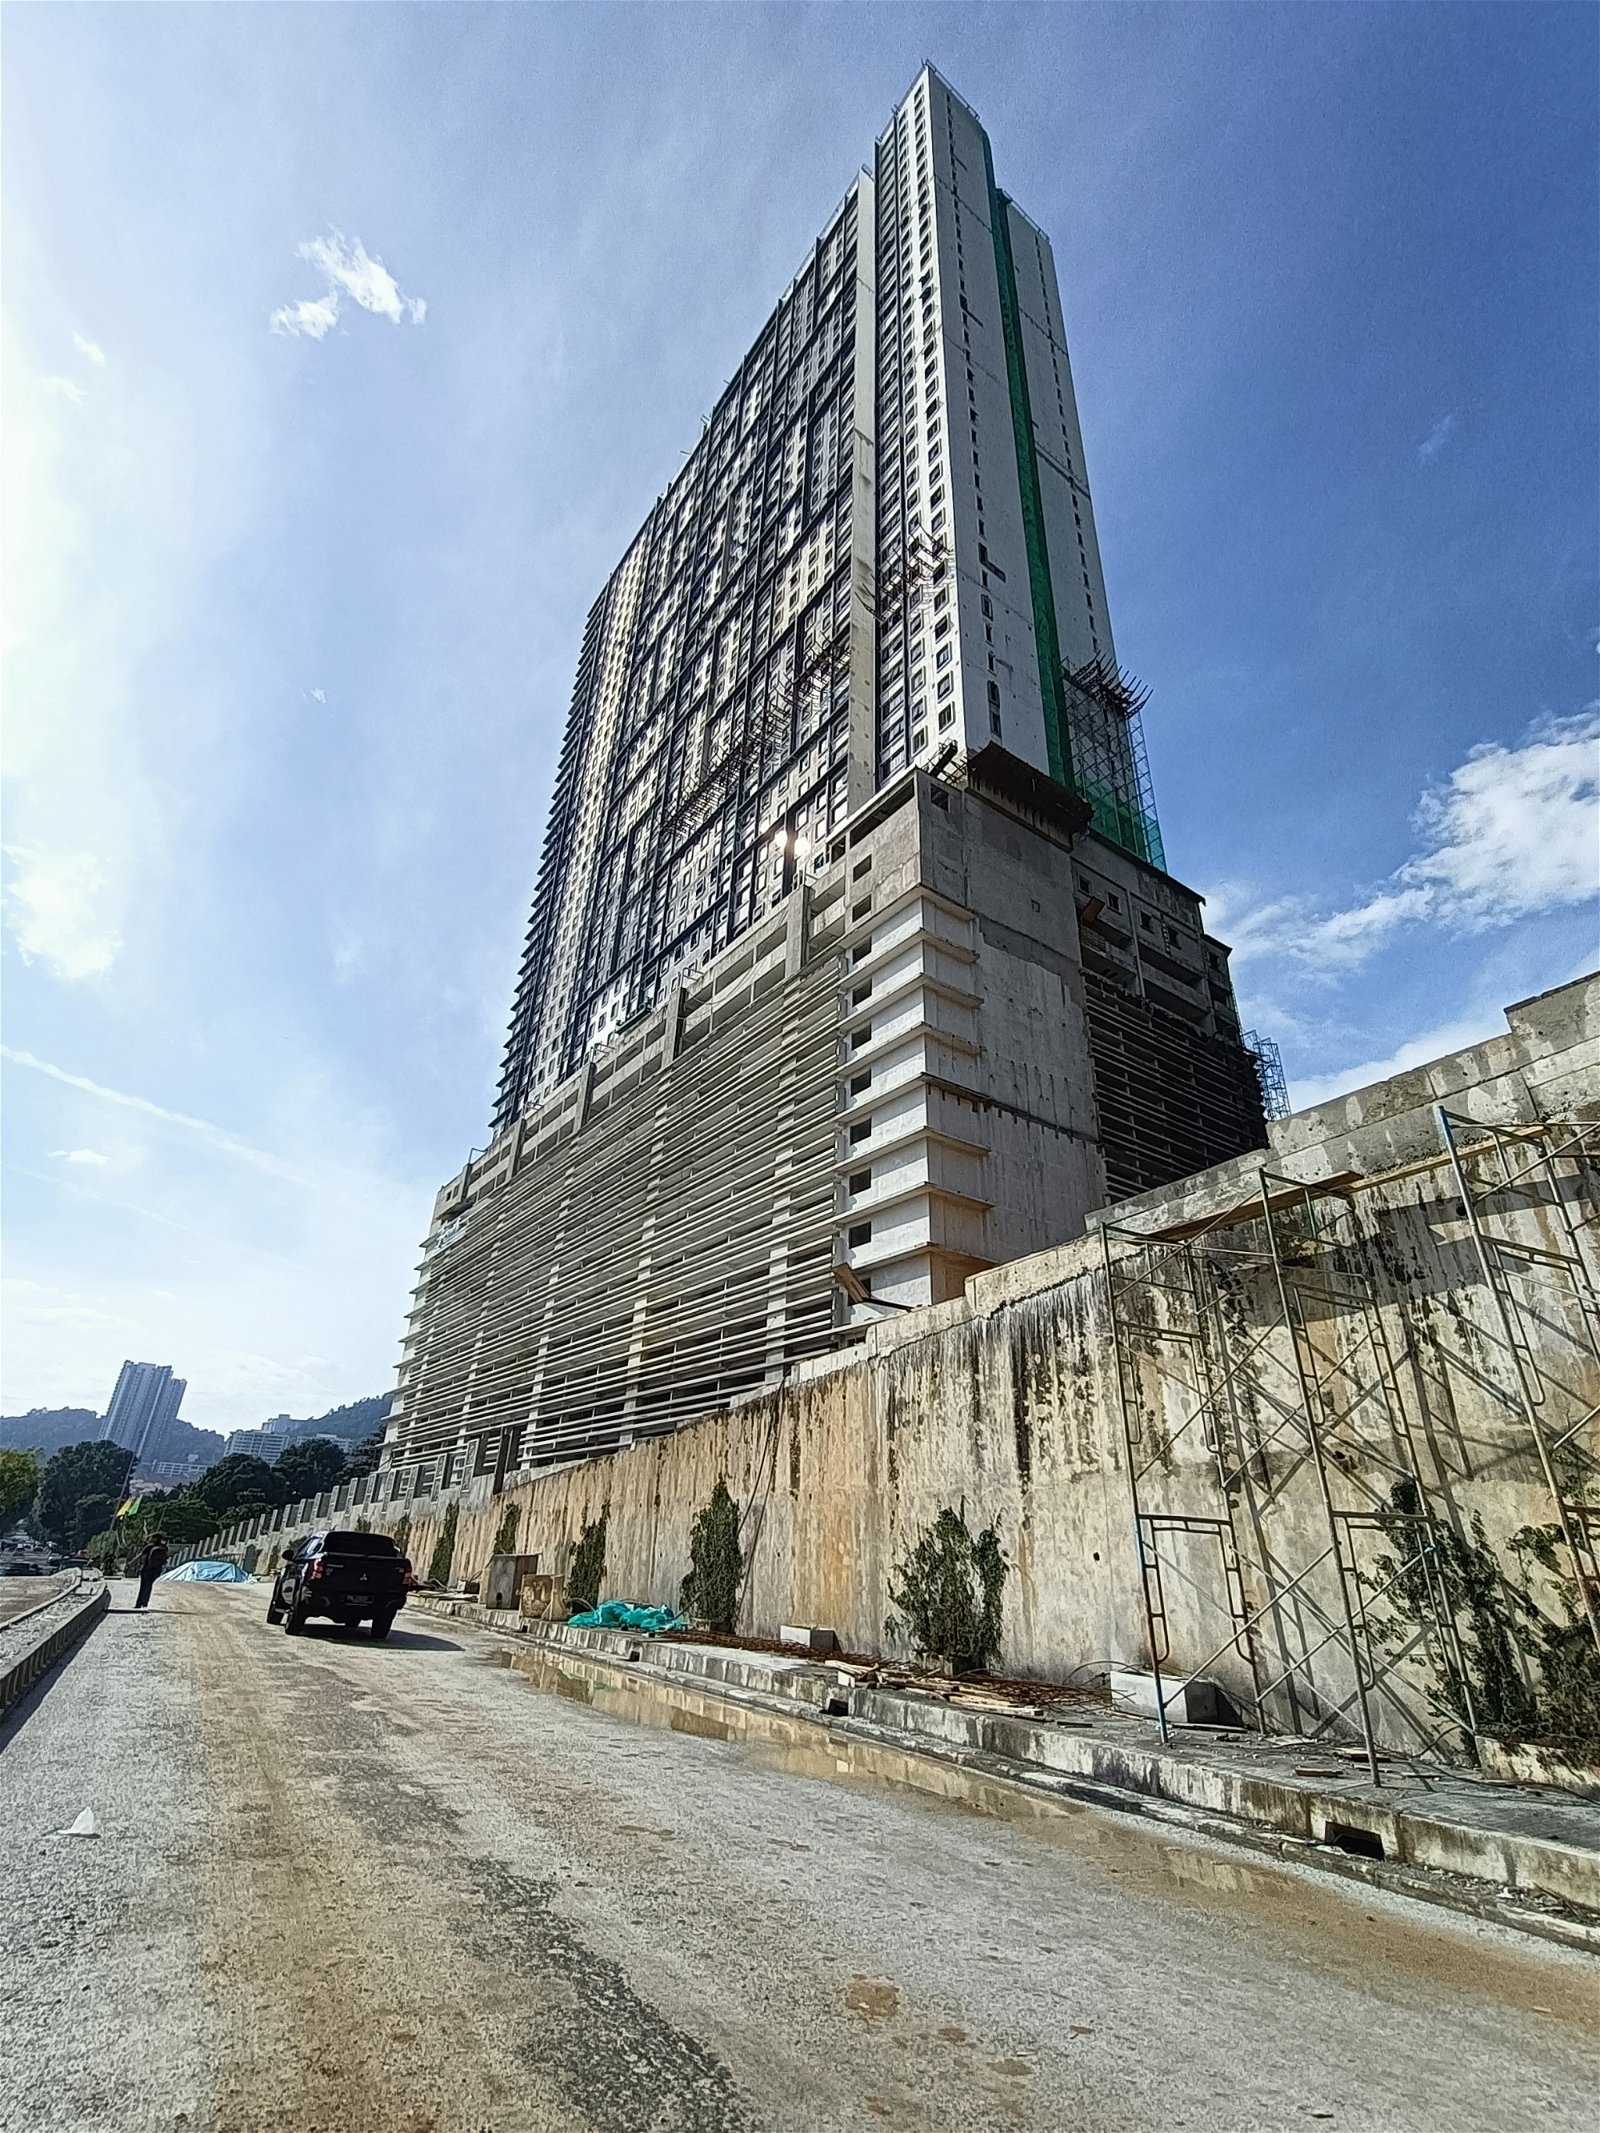 丹绒武雅Granito可负担房屋计划工程已完成80%，预计将于今年第三季度杪或第四季度初完工。